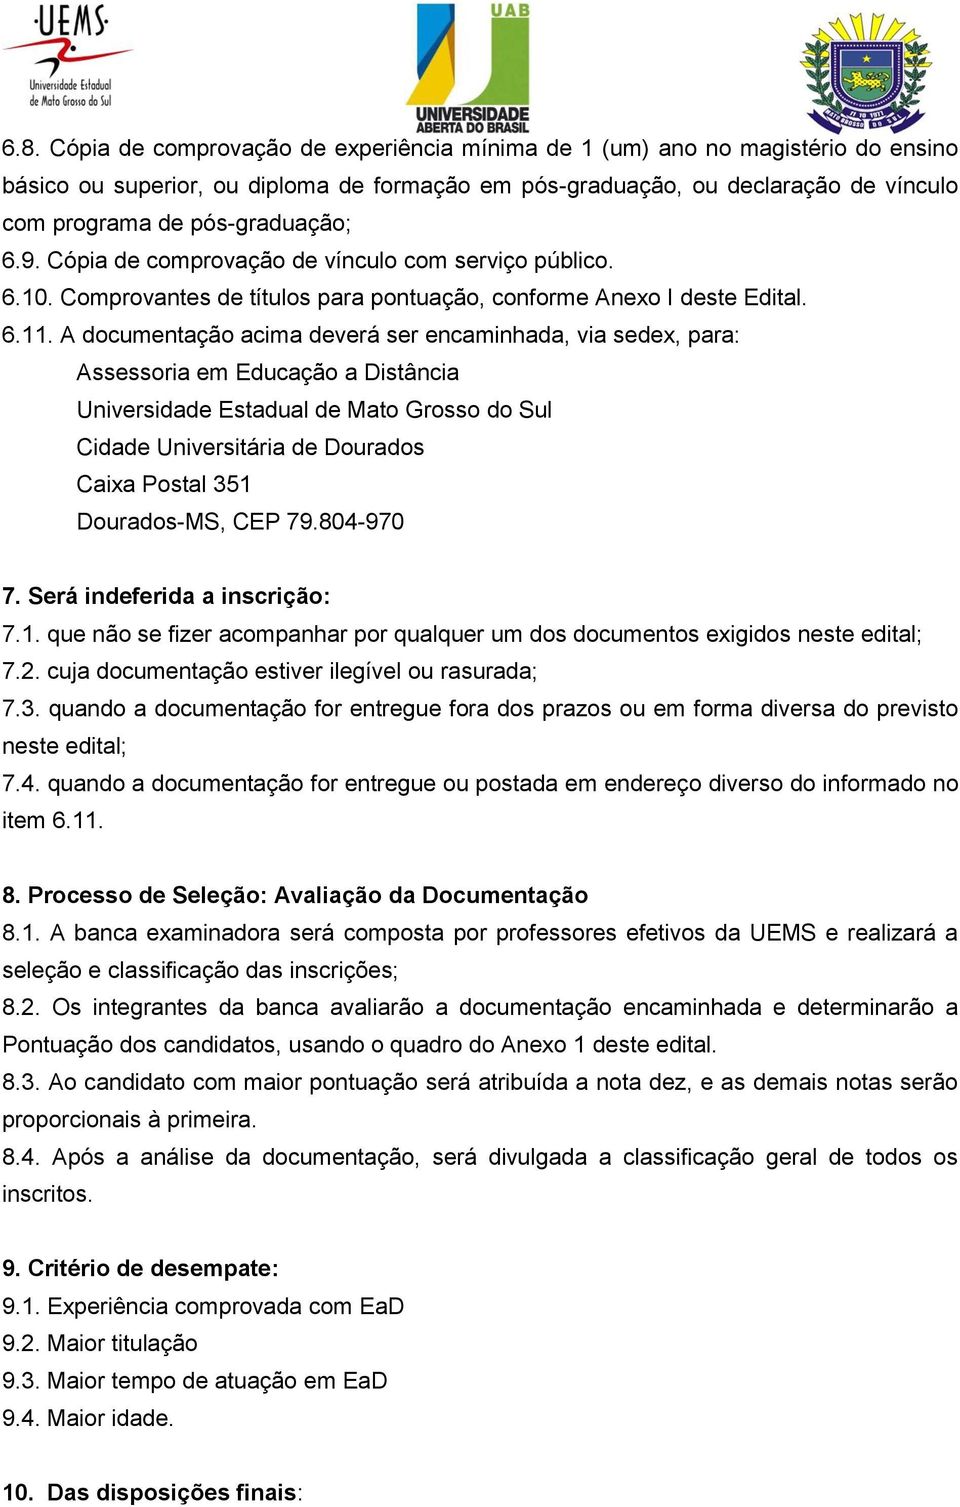 A documentação acima deverá ser encaminhada, via sedex, para: Assessoria em Educação a Distância Universidade Estadual de Mato Grosso do Sul Cidade Universitária de Dourados Caixa Postal 351